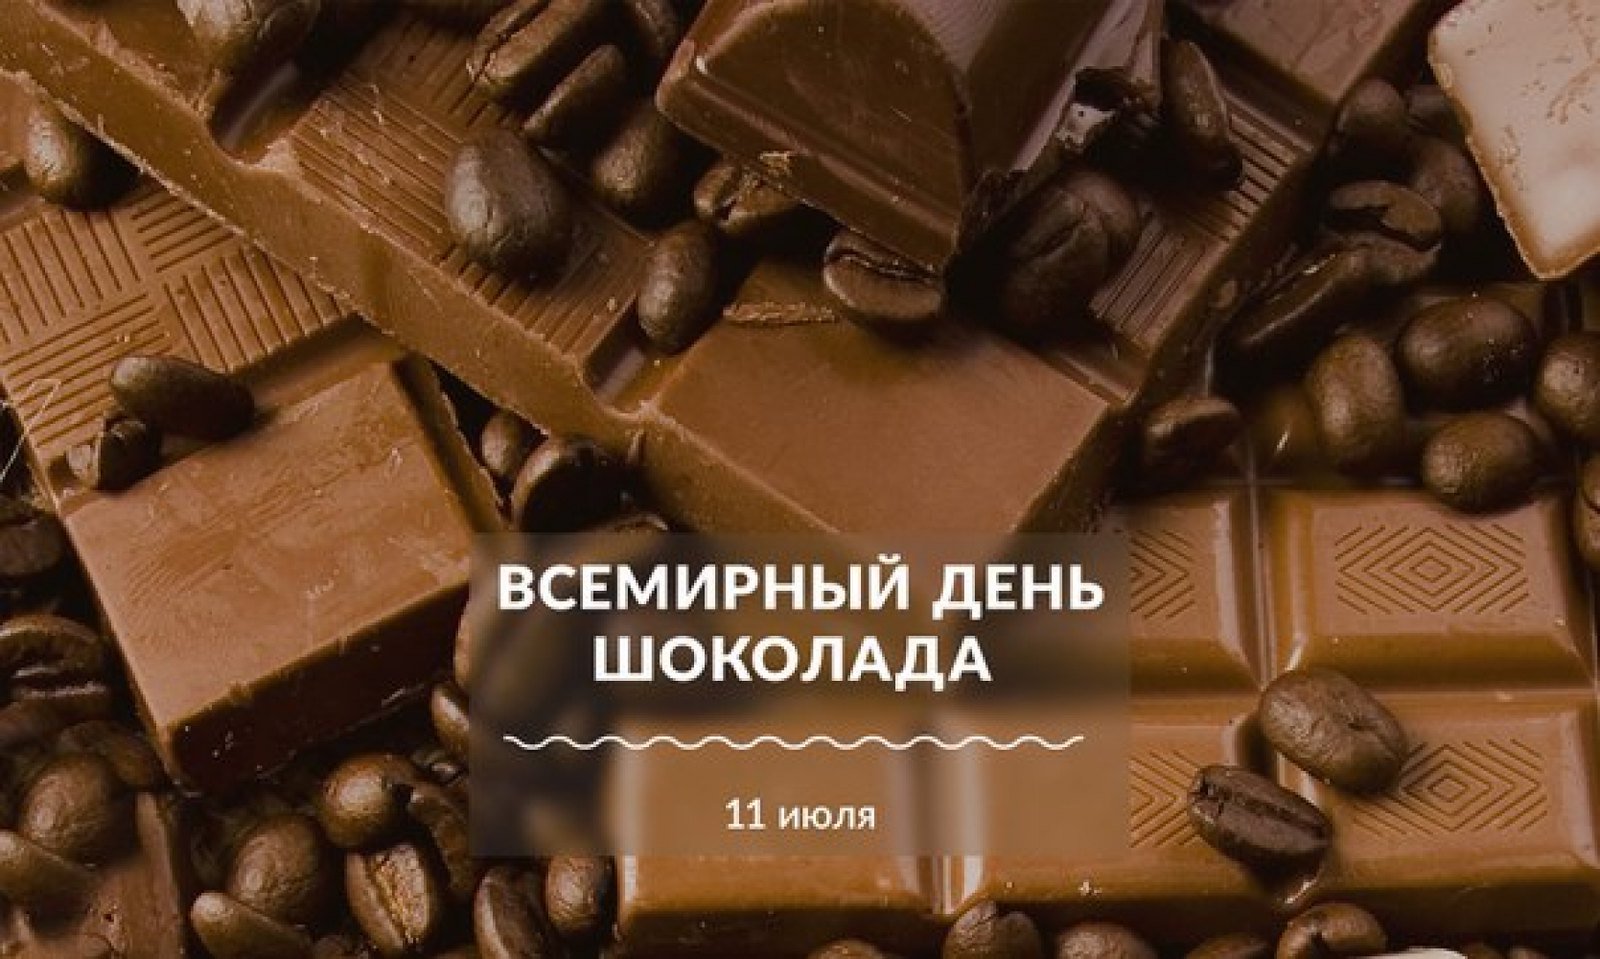 Всемирный день шоколада в 2019: какого числа будет, история праздника в 2021 году